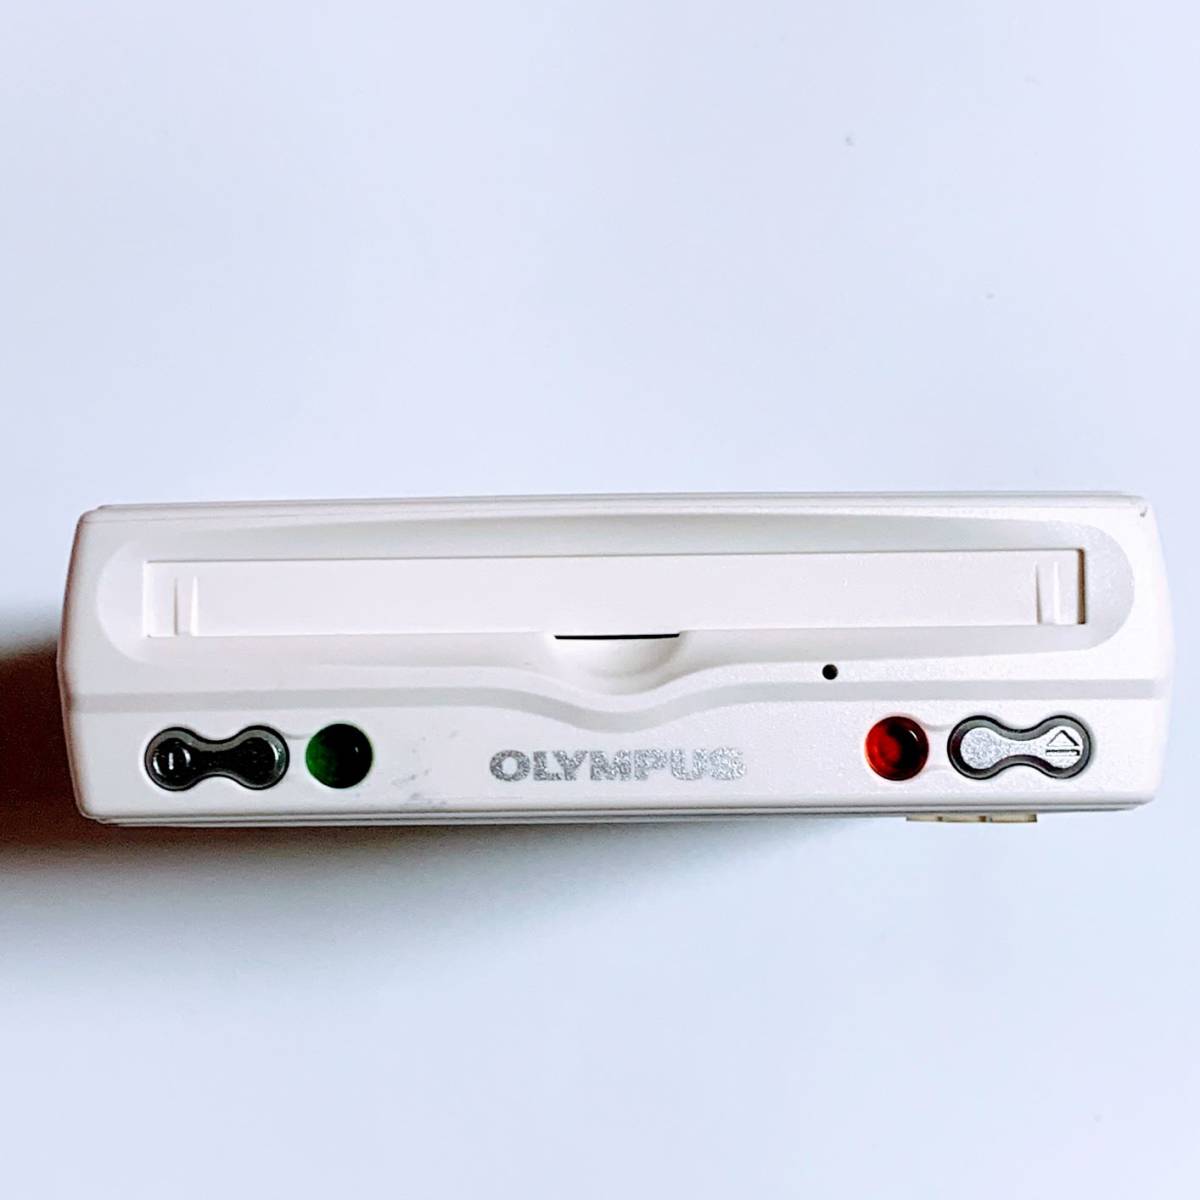 【1週間レンタル商品 返送料込】 1.3GB 対応 MOドライブ OLYMPUS オリンパス TURBO MO mini V ACアダプタ給電タイプ_画像2